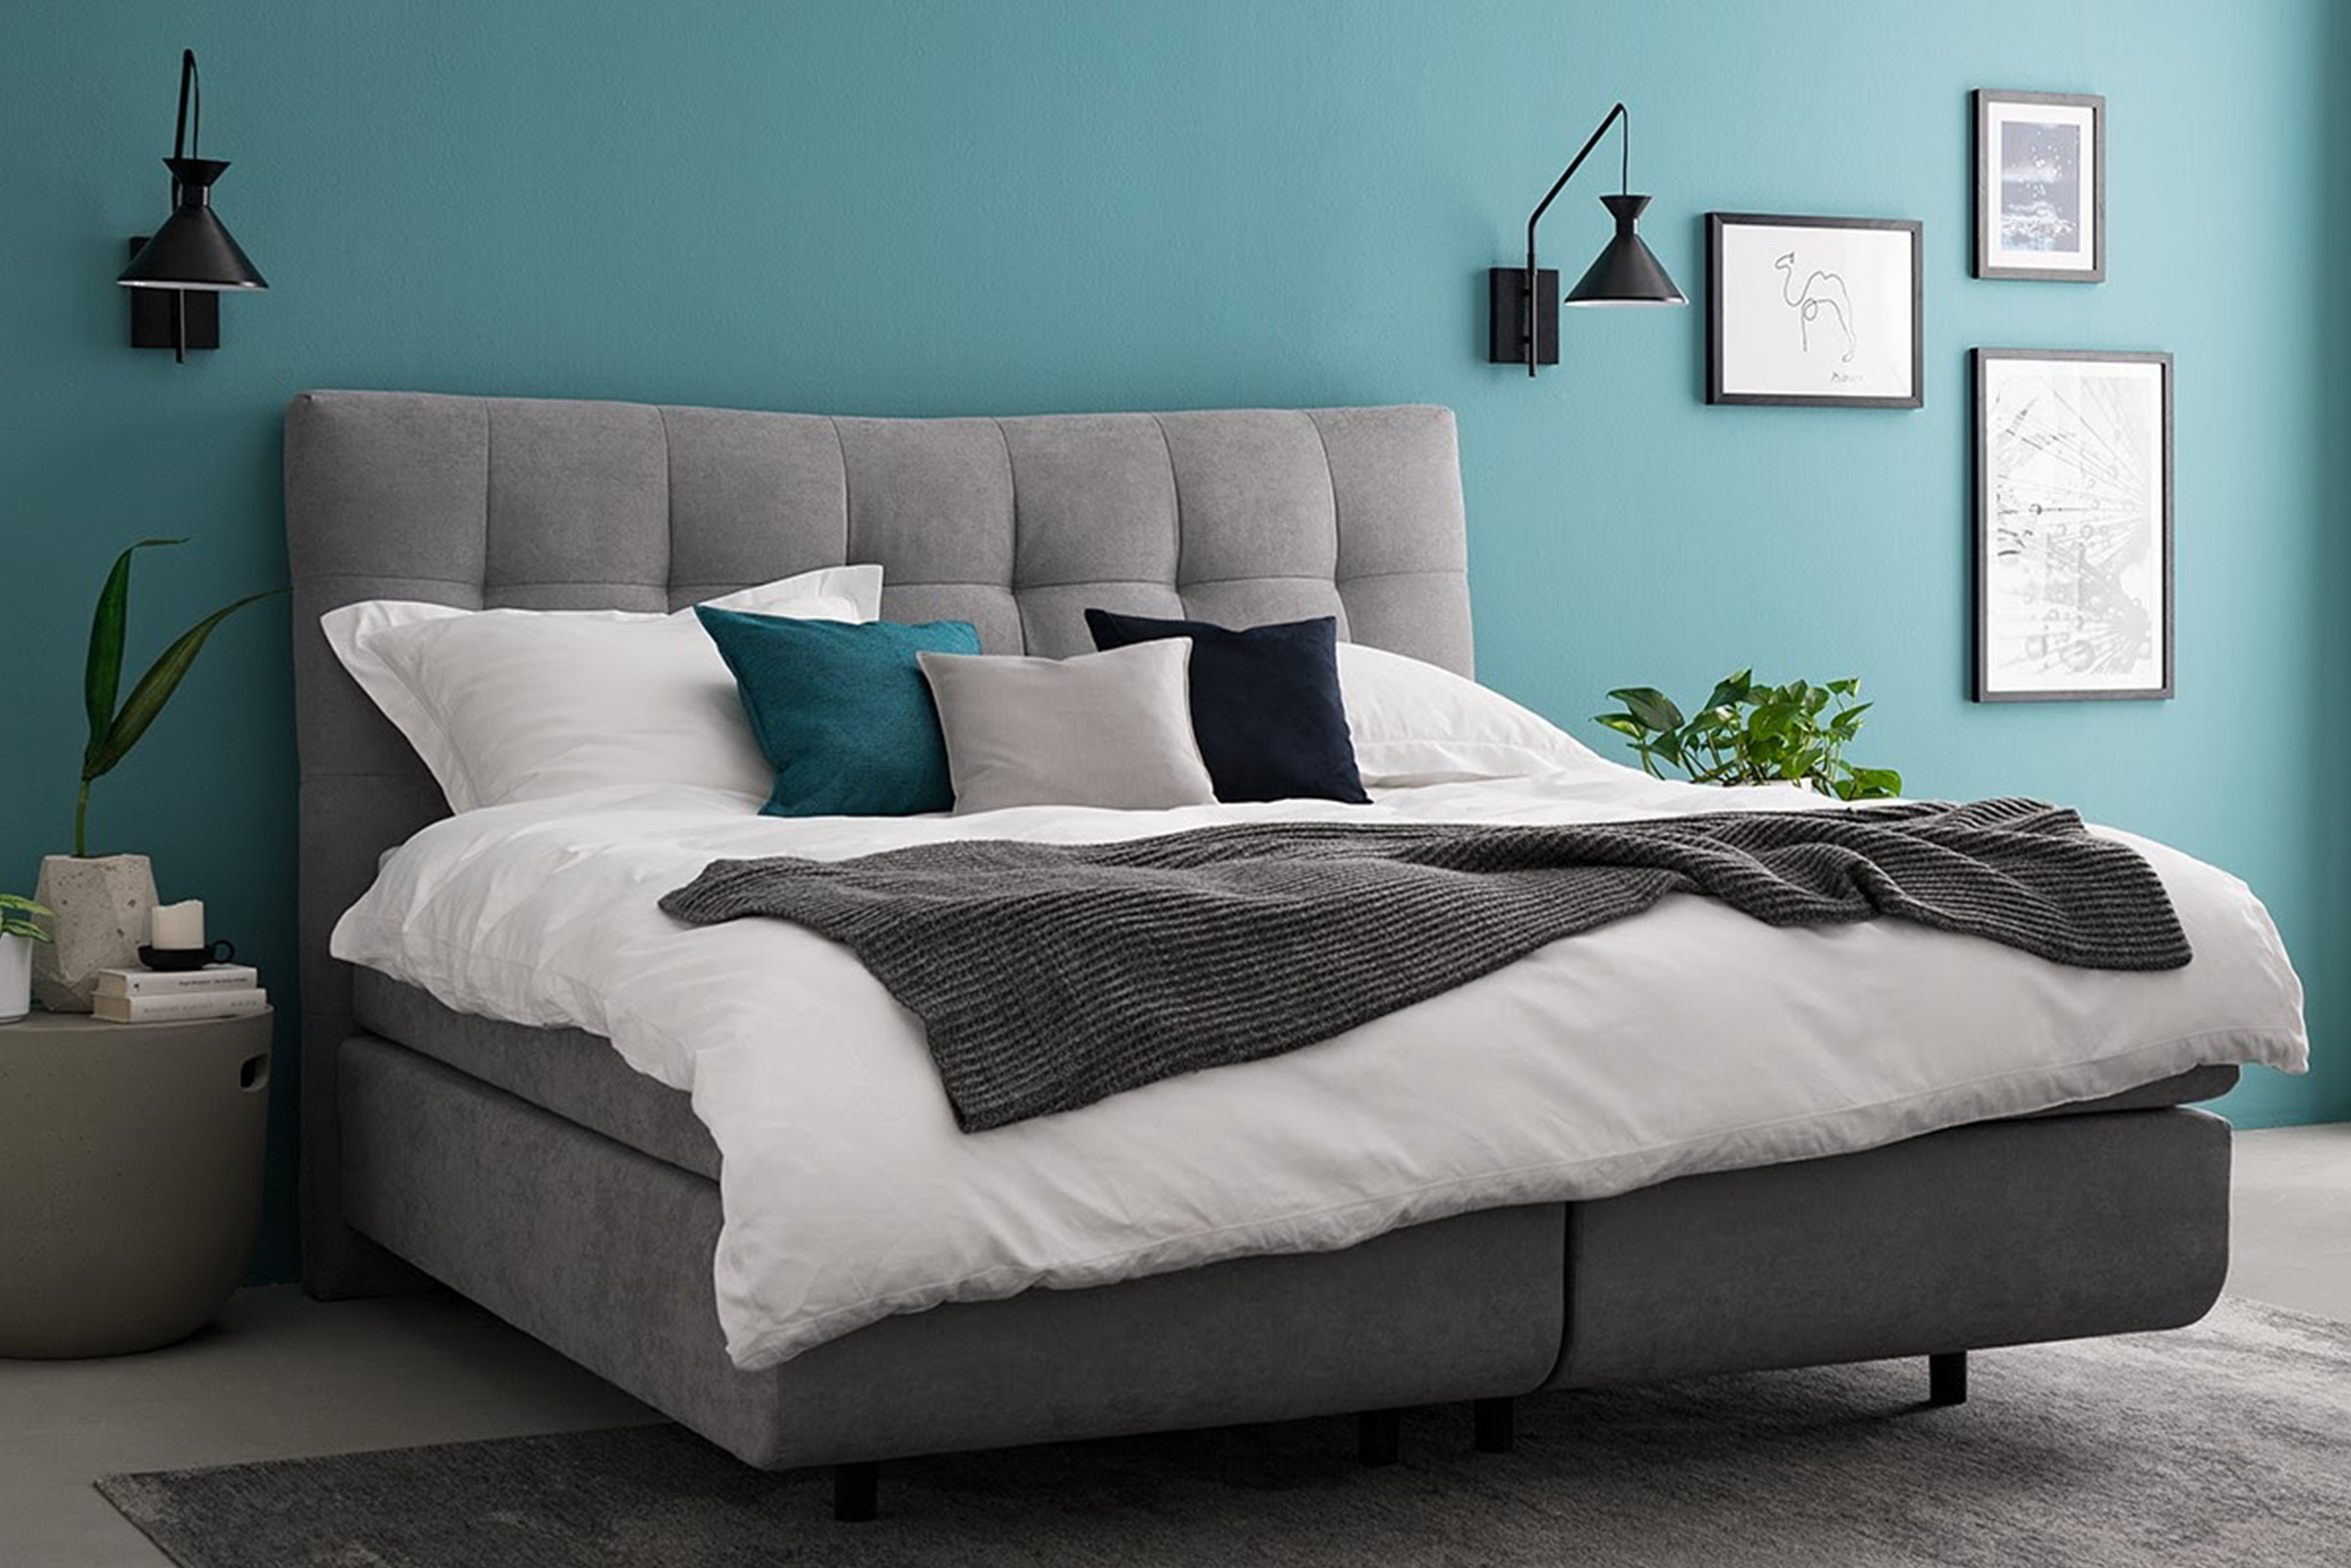 Graues Bett in Schlafzimmer mit türkiser Wand und schwarzen Wandleuchten